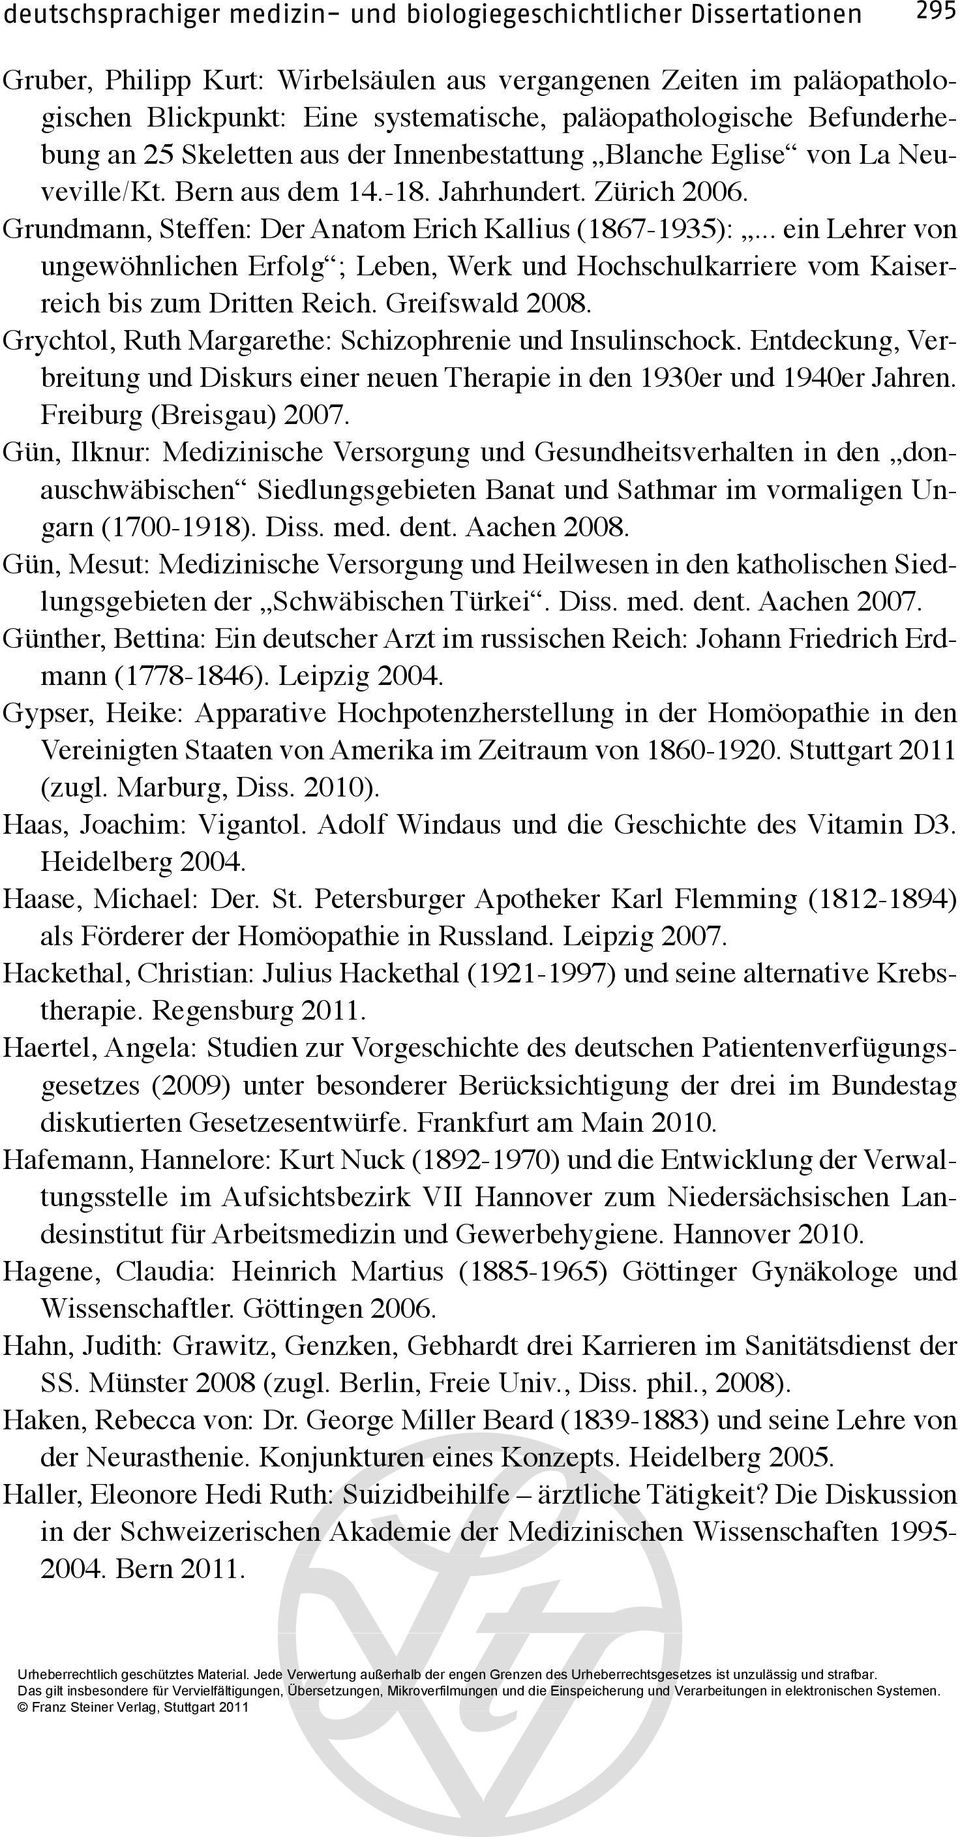 Grundmann, Steffen: Der Anatom Erich Kallius (1867-1935):... ein Lehrer von ungewöhnlichen Erfolg ; Leben, Werk und Hochschulkarriere vom Kaiserreich bis zum Dritten Reich. Greifswald 2008.